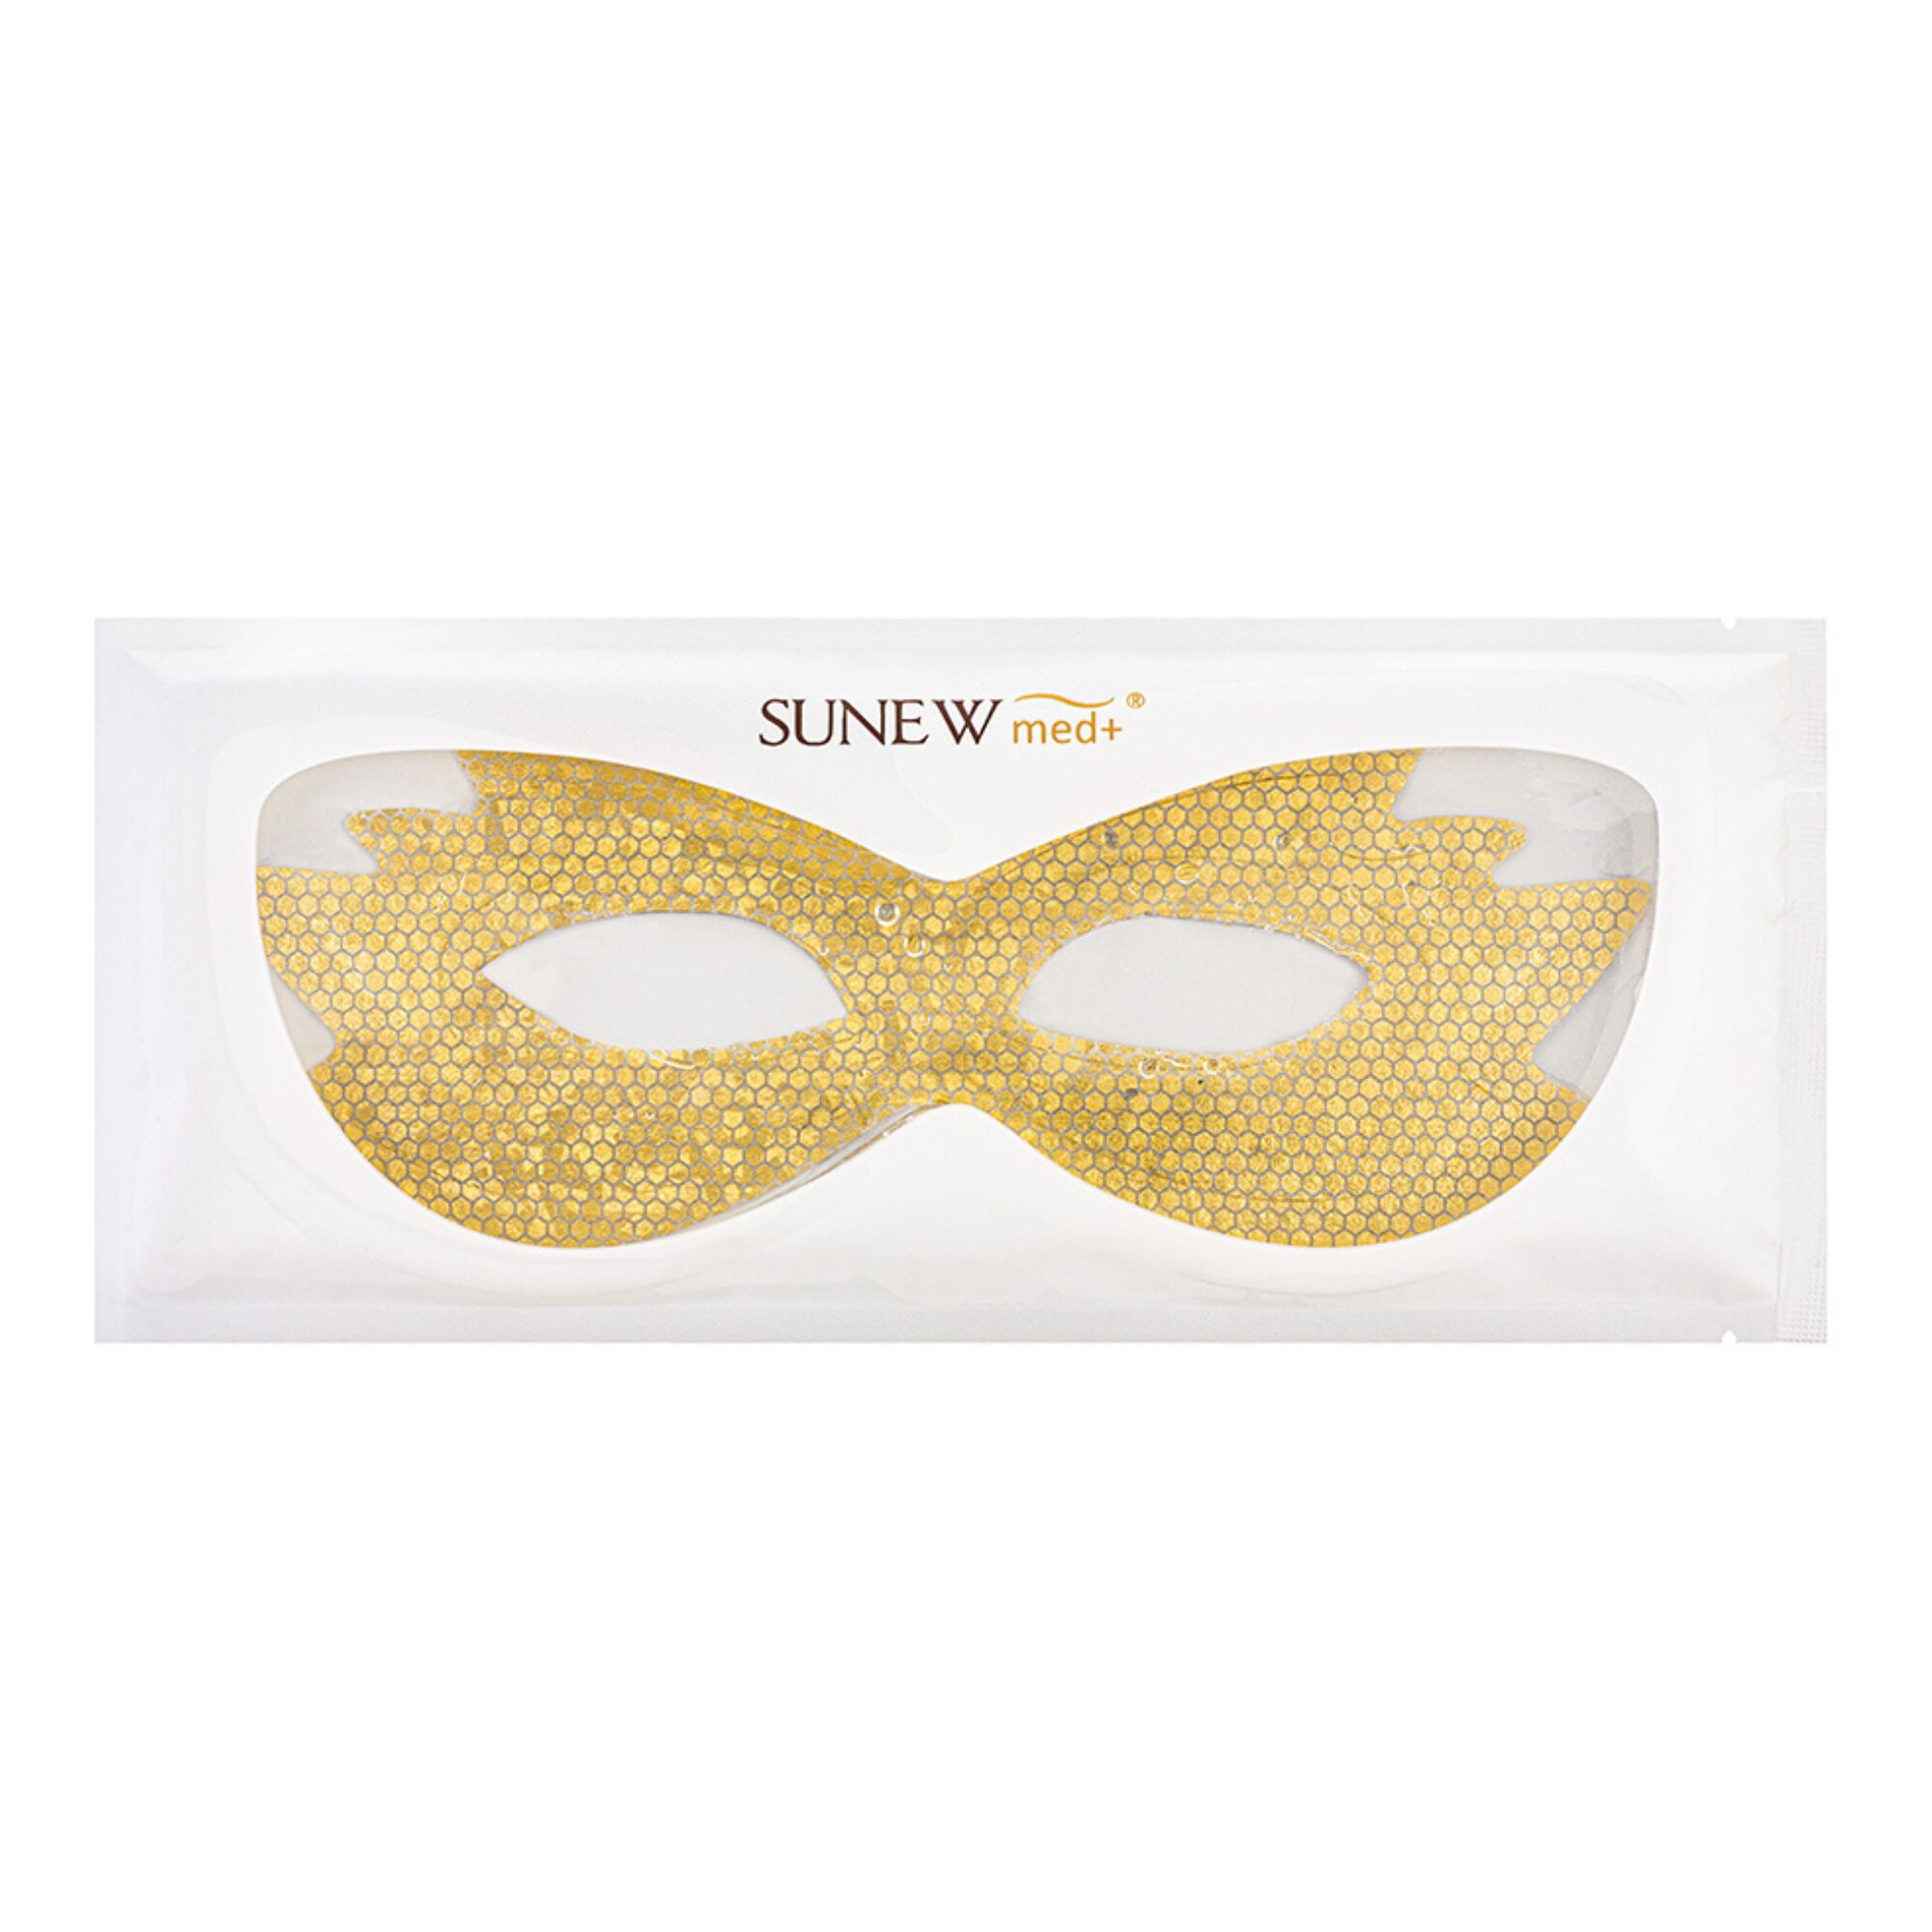 Комплект: тканевая маска-лифтинг для области вокруг глаз Sunewmed+ Essence+, 4 шт маска для глаз manefit маска лифтинг гидрогелевая с ежевикой для кожи вокруг глаз